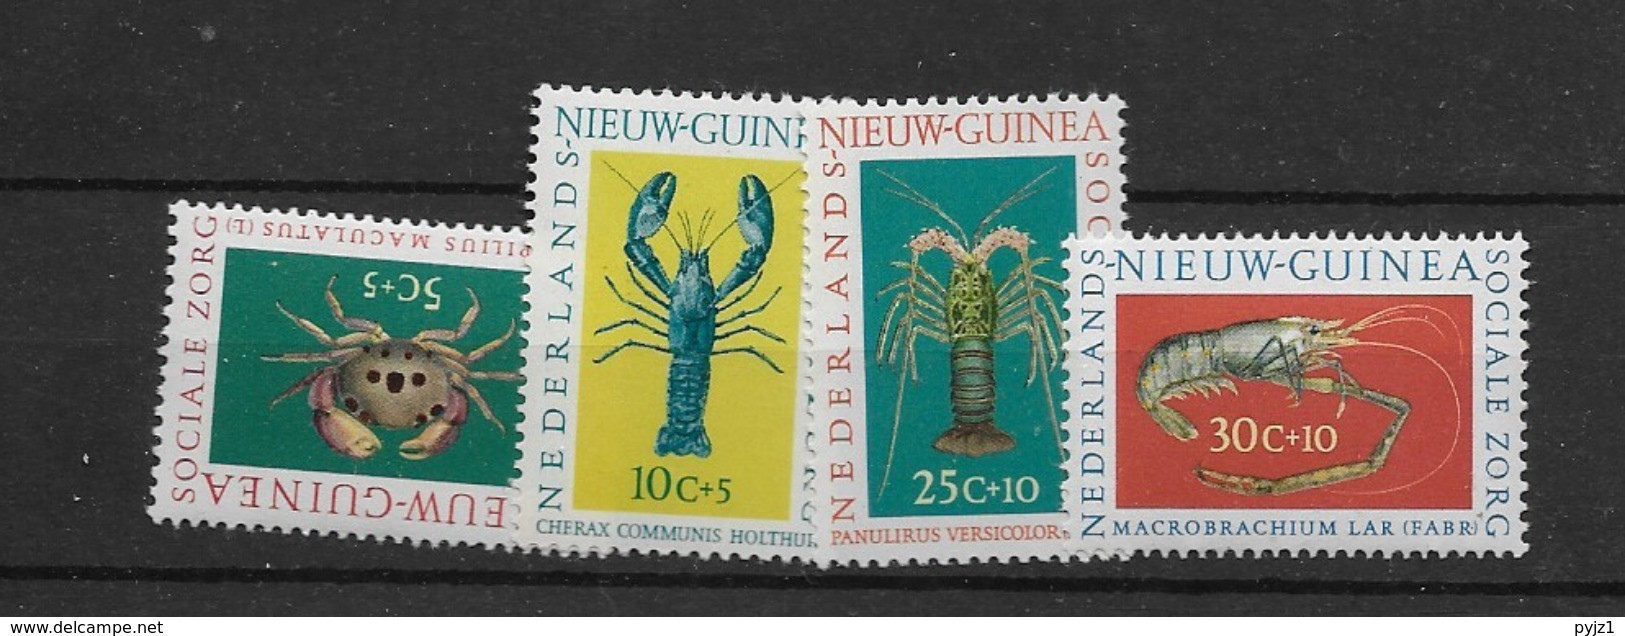 1962 Nederlands Nieuw Guinea, Postfris** - Crustaceans